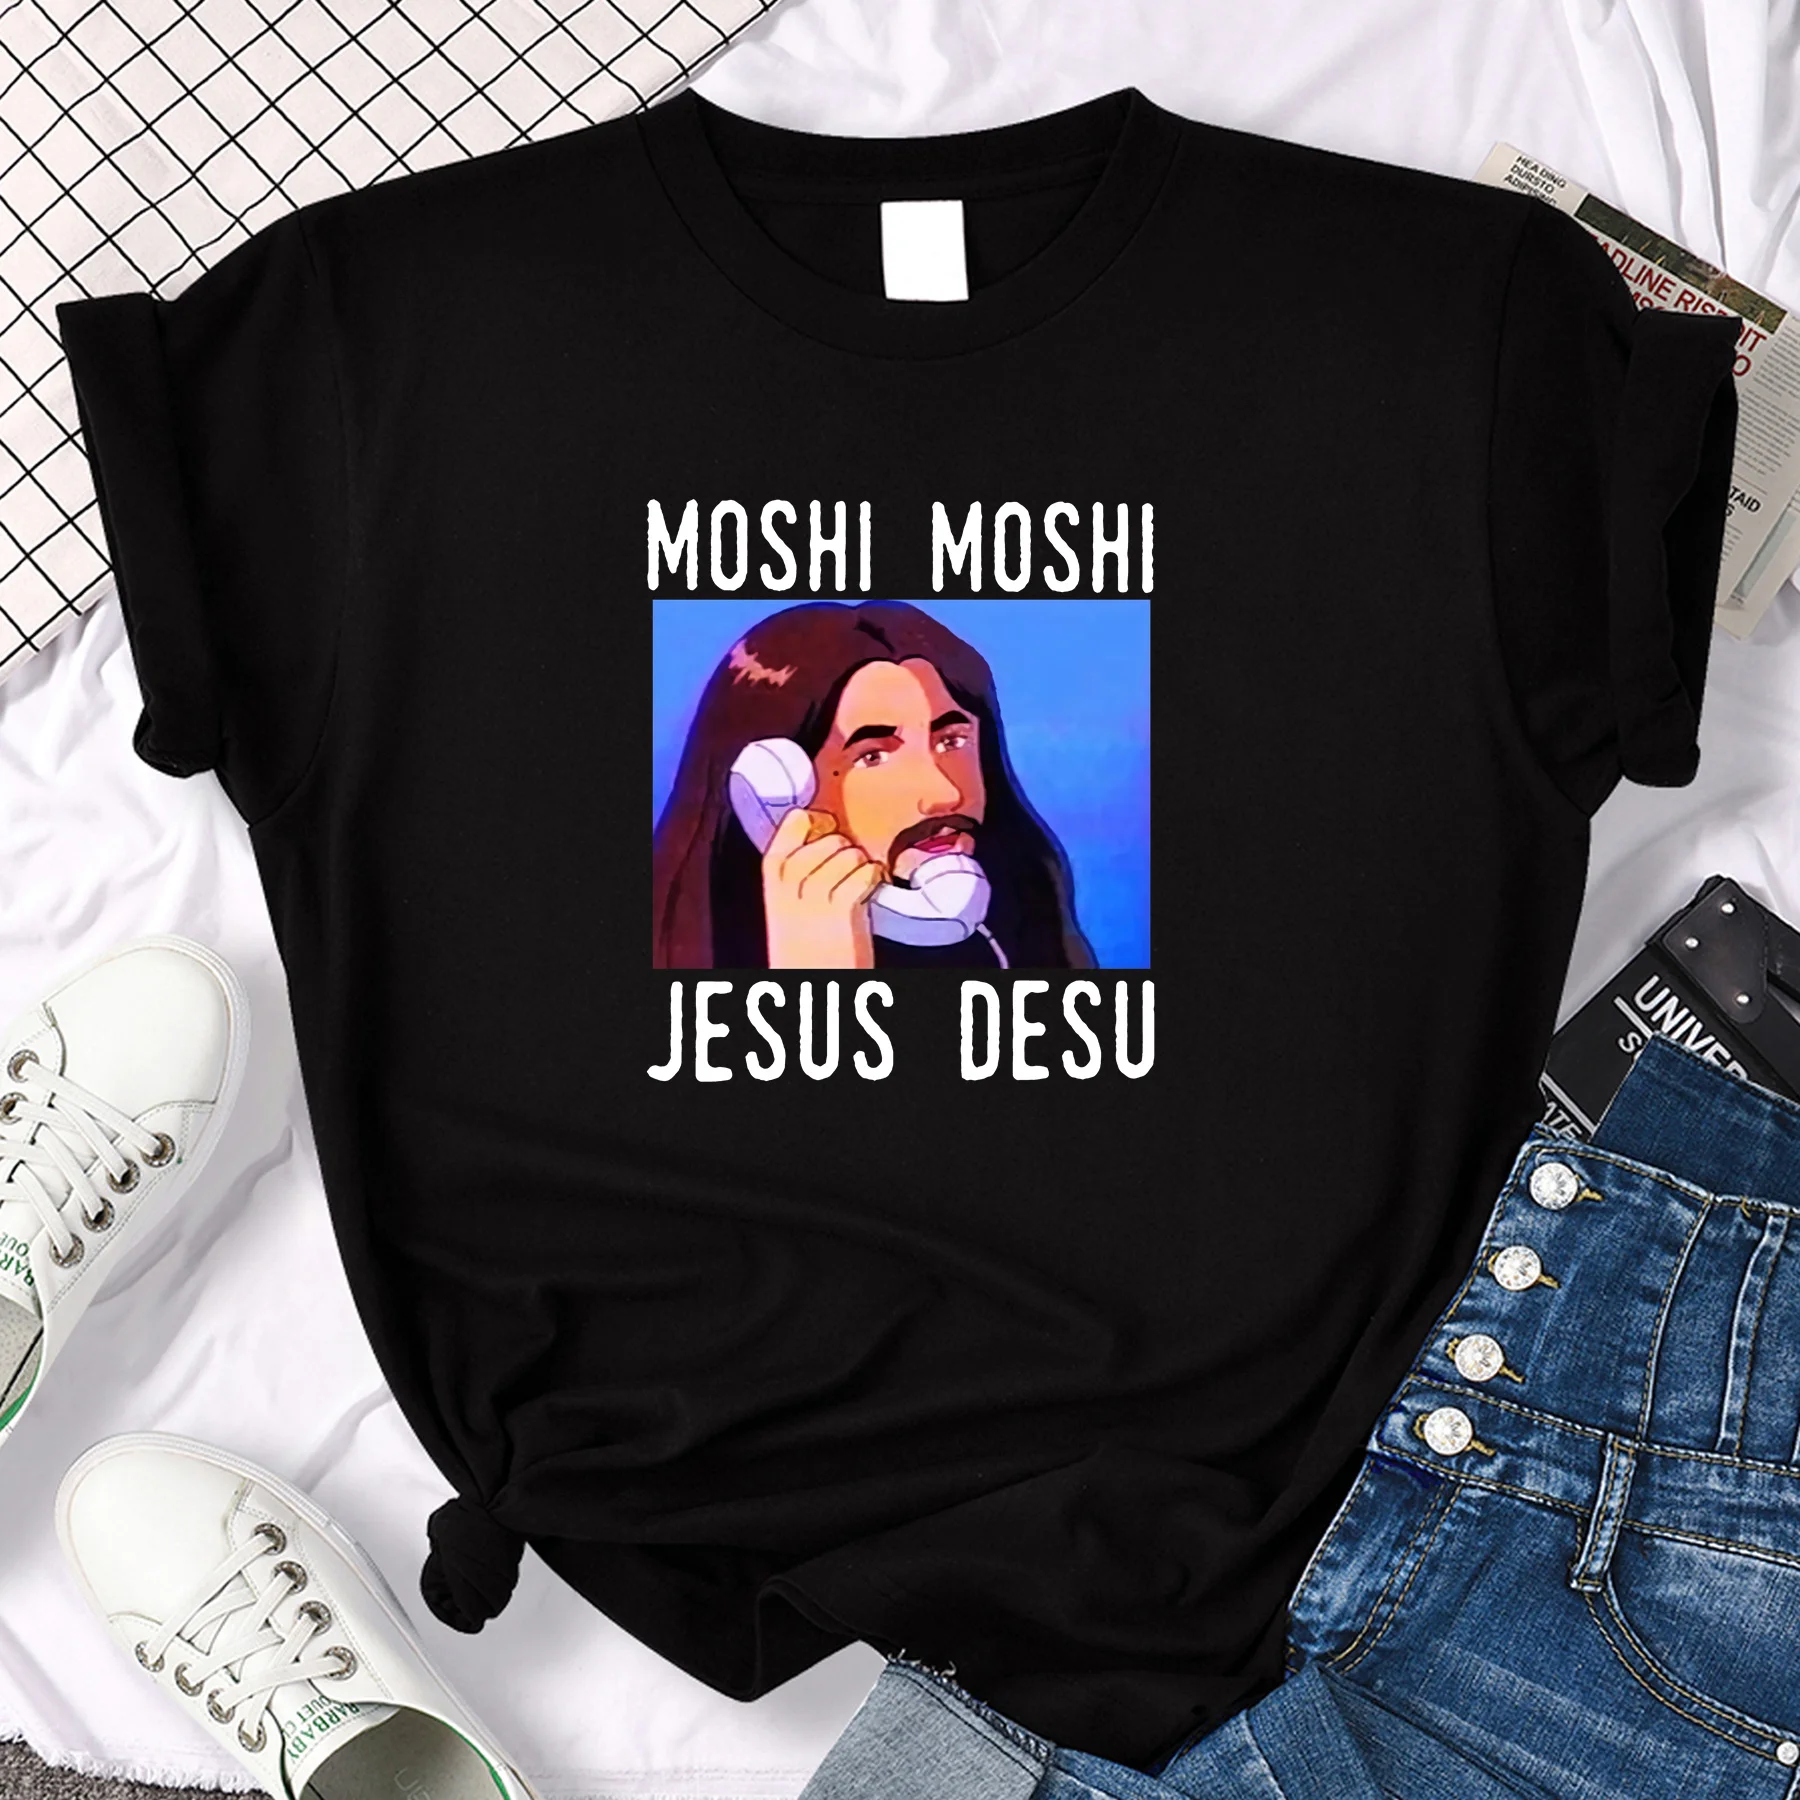 

Удивительная Мужская футболка, Мужская футболка оверсайз Moshi с изображением Иисуса Десу, забавная футболка, женские футболки, женская футбо...